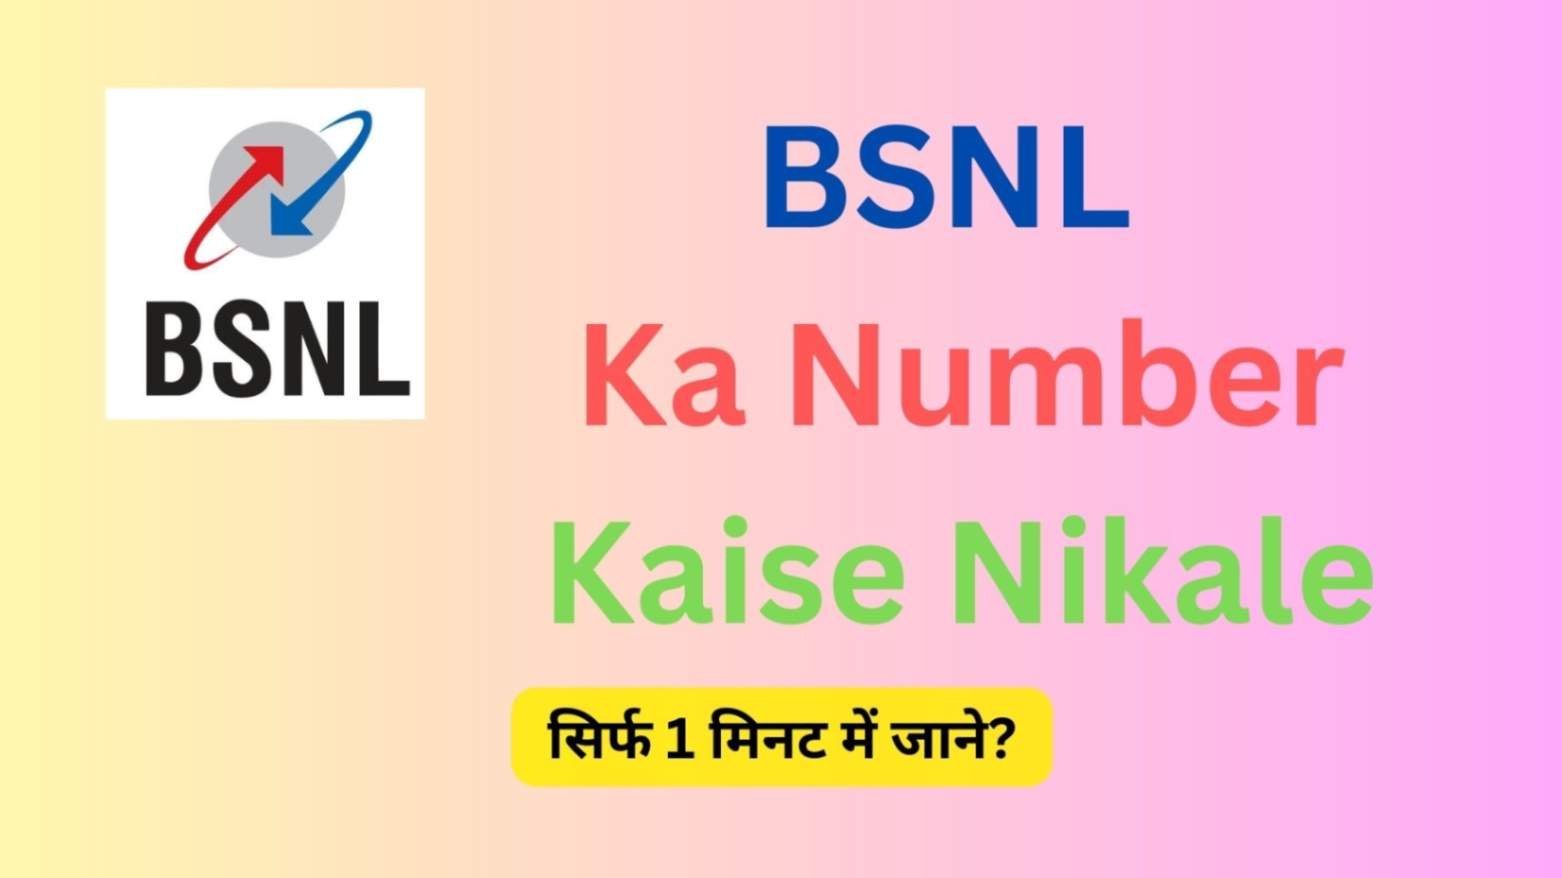 BSNL Ka Number Kaise Nikale, BSNL Number Check Code